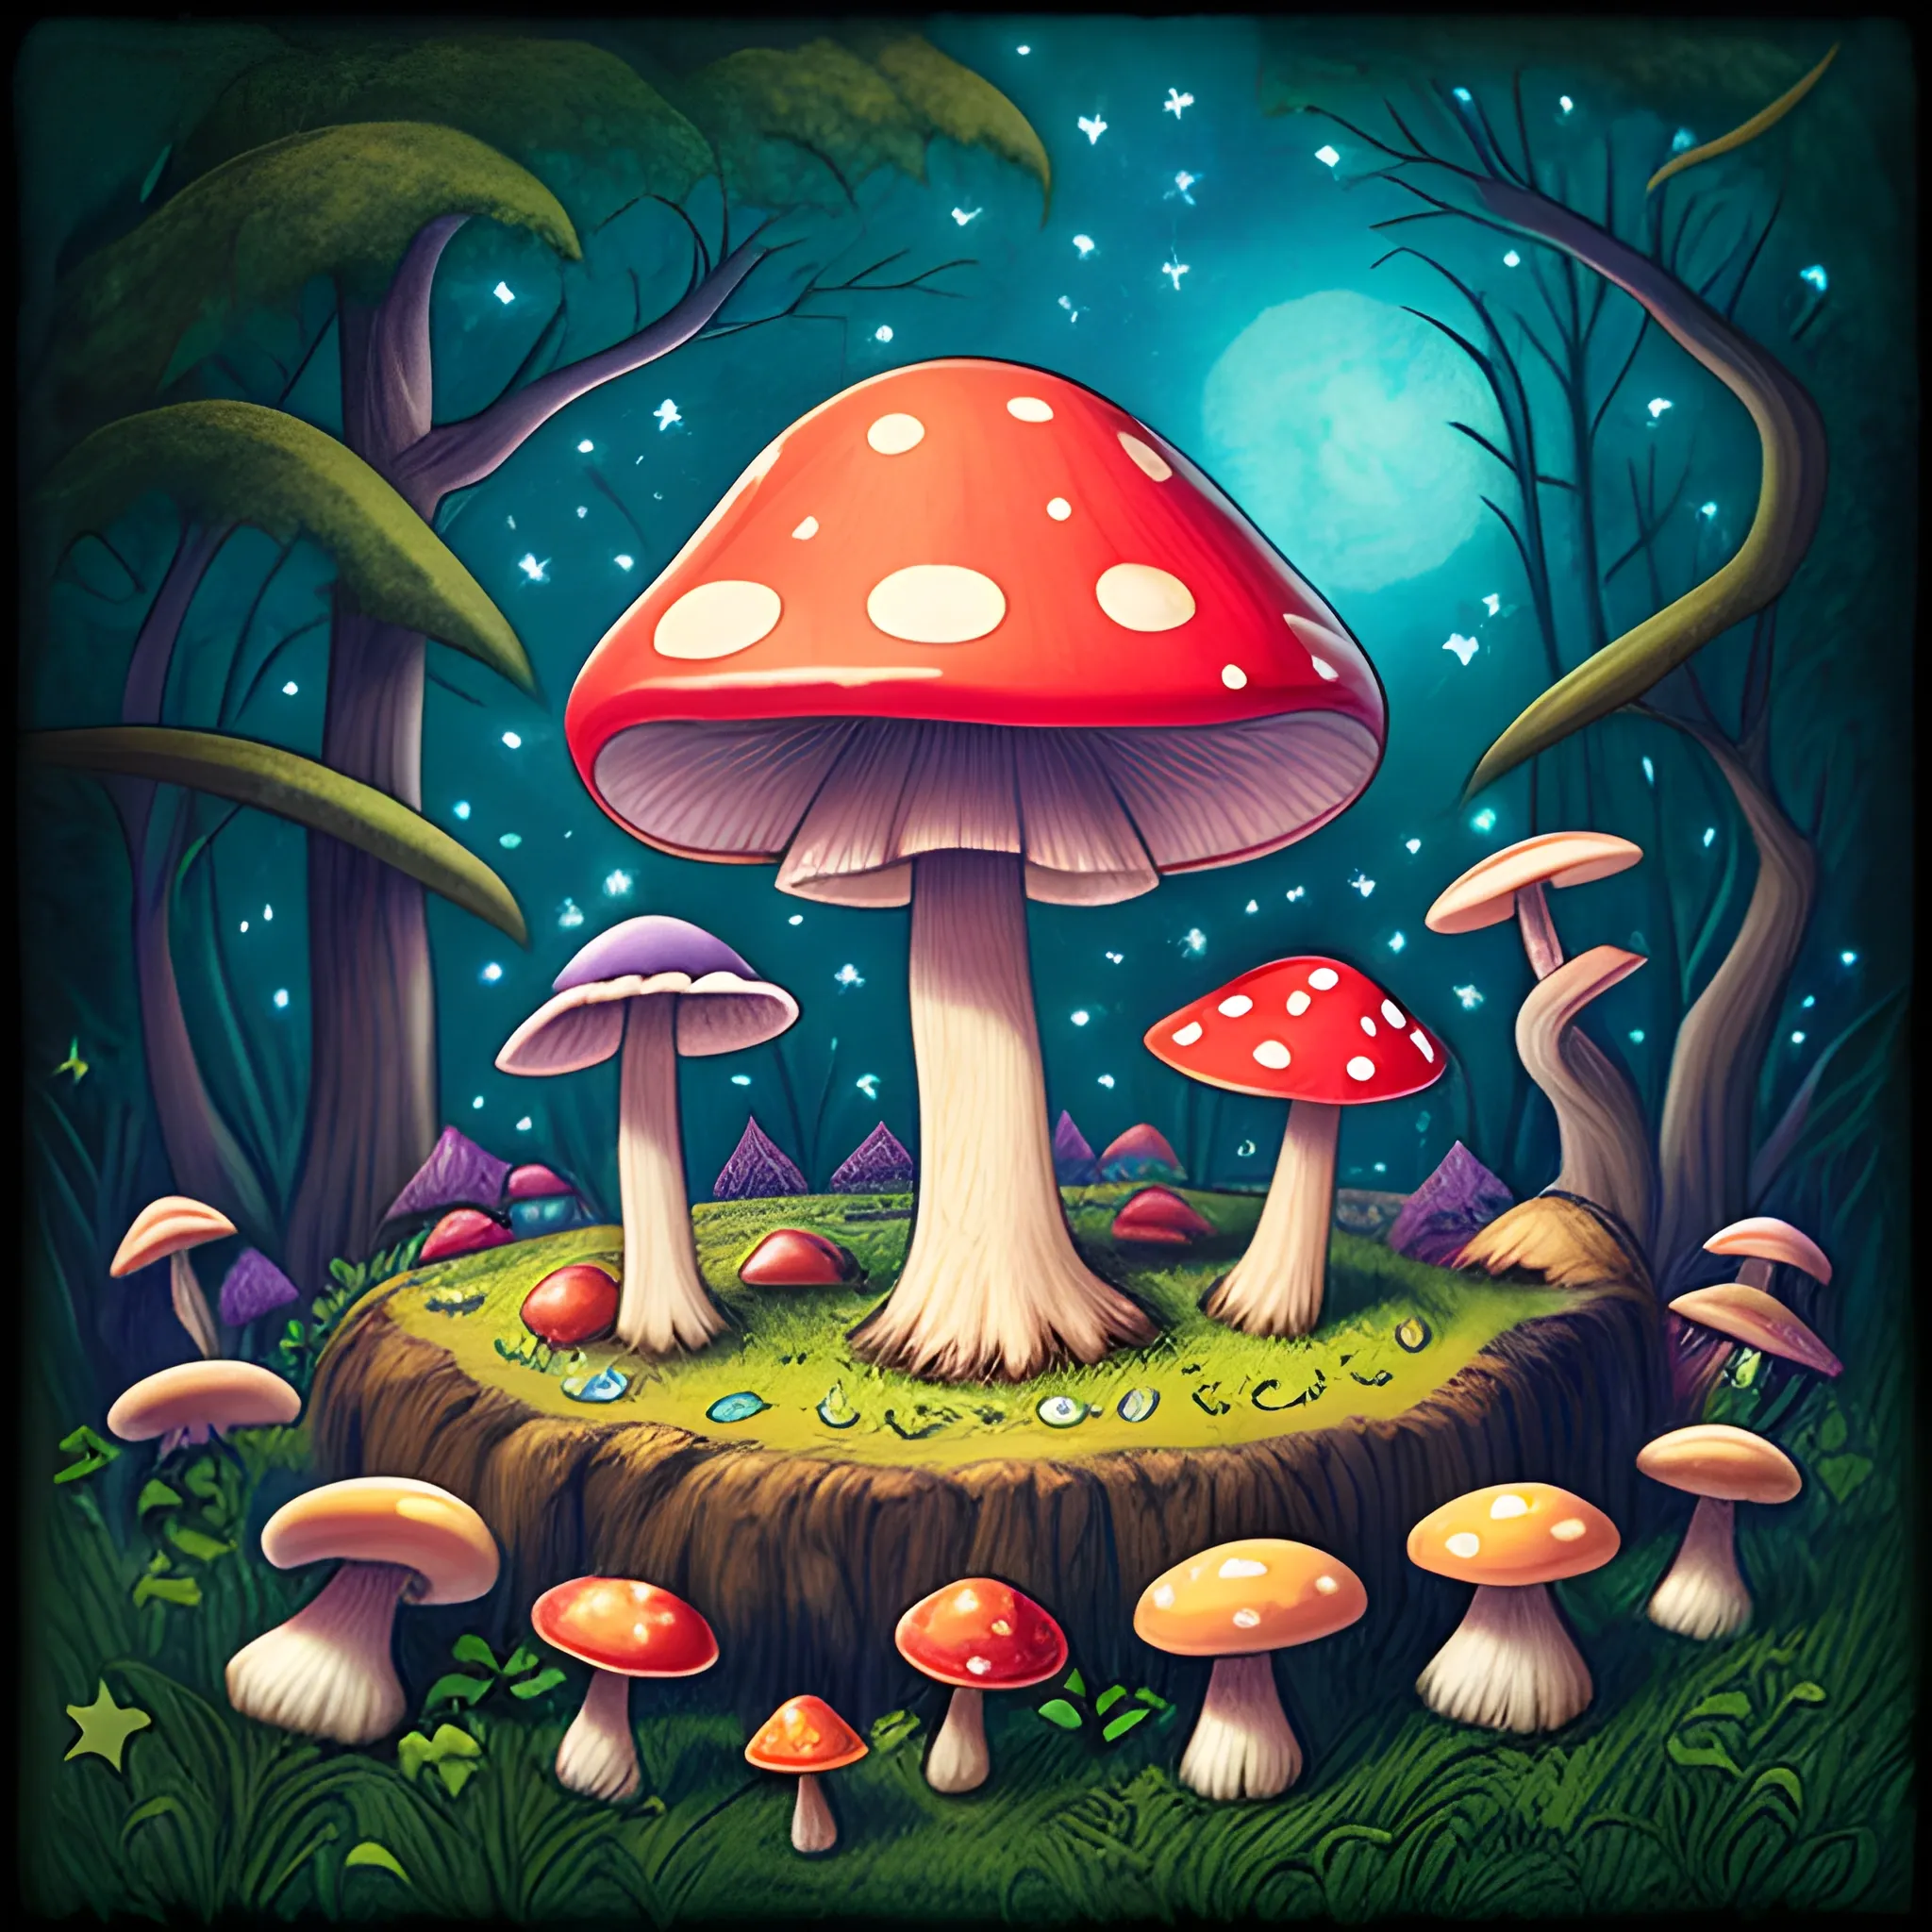 Mushrooms and star and magic - Arthub.ai